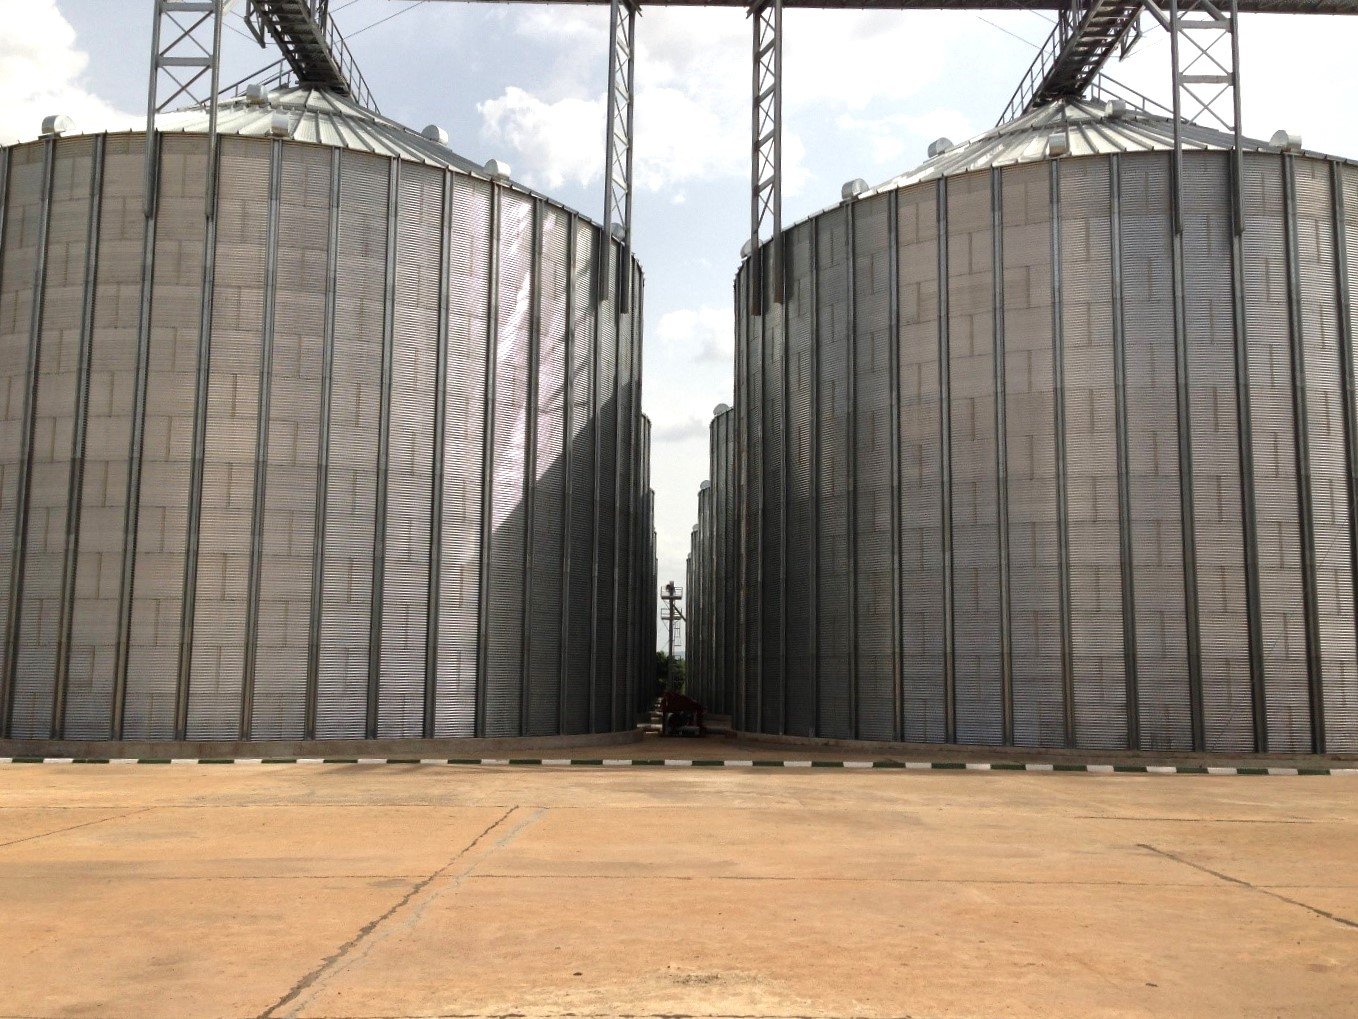 2 of 8 silo complexes in Nigeria